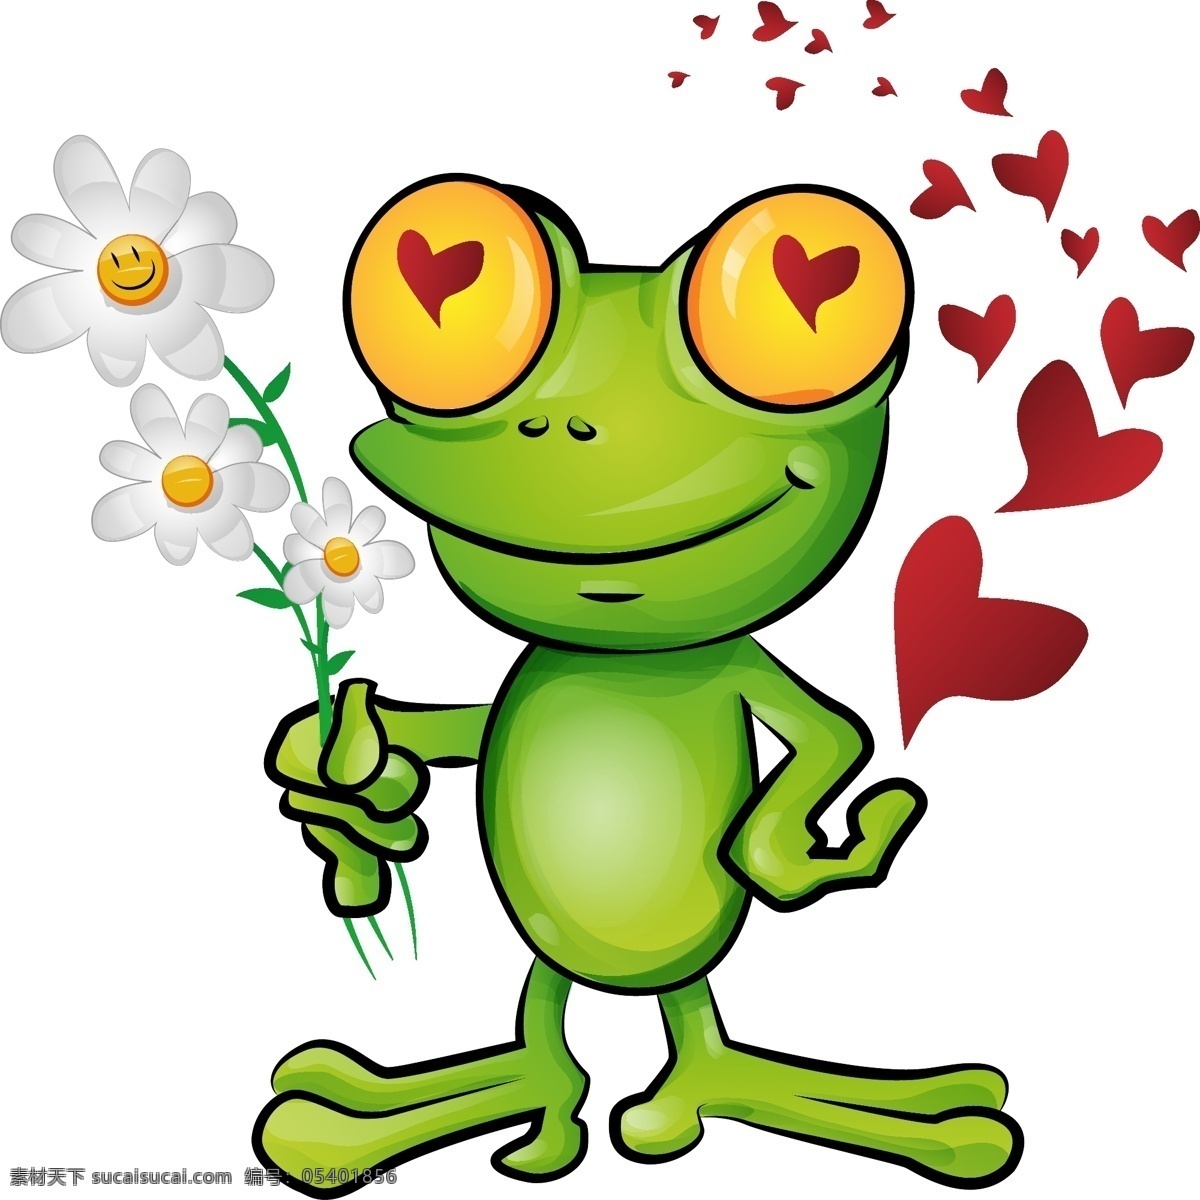 青蛙 卡通 爱心 红心 情人节 童话世界 可爱 矢量素材 生物世界 野生动物 矢量